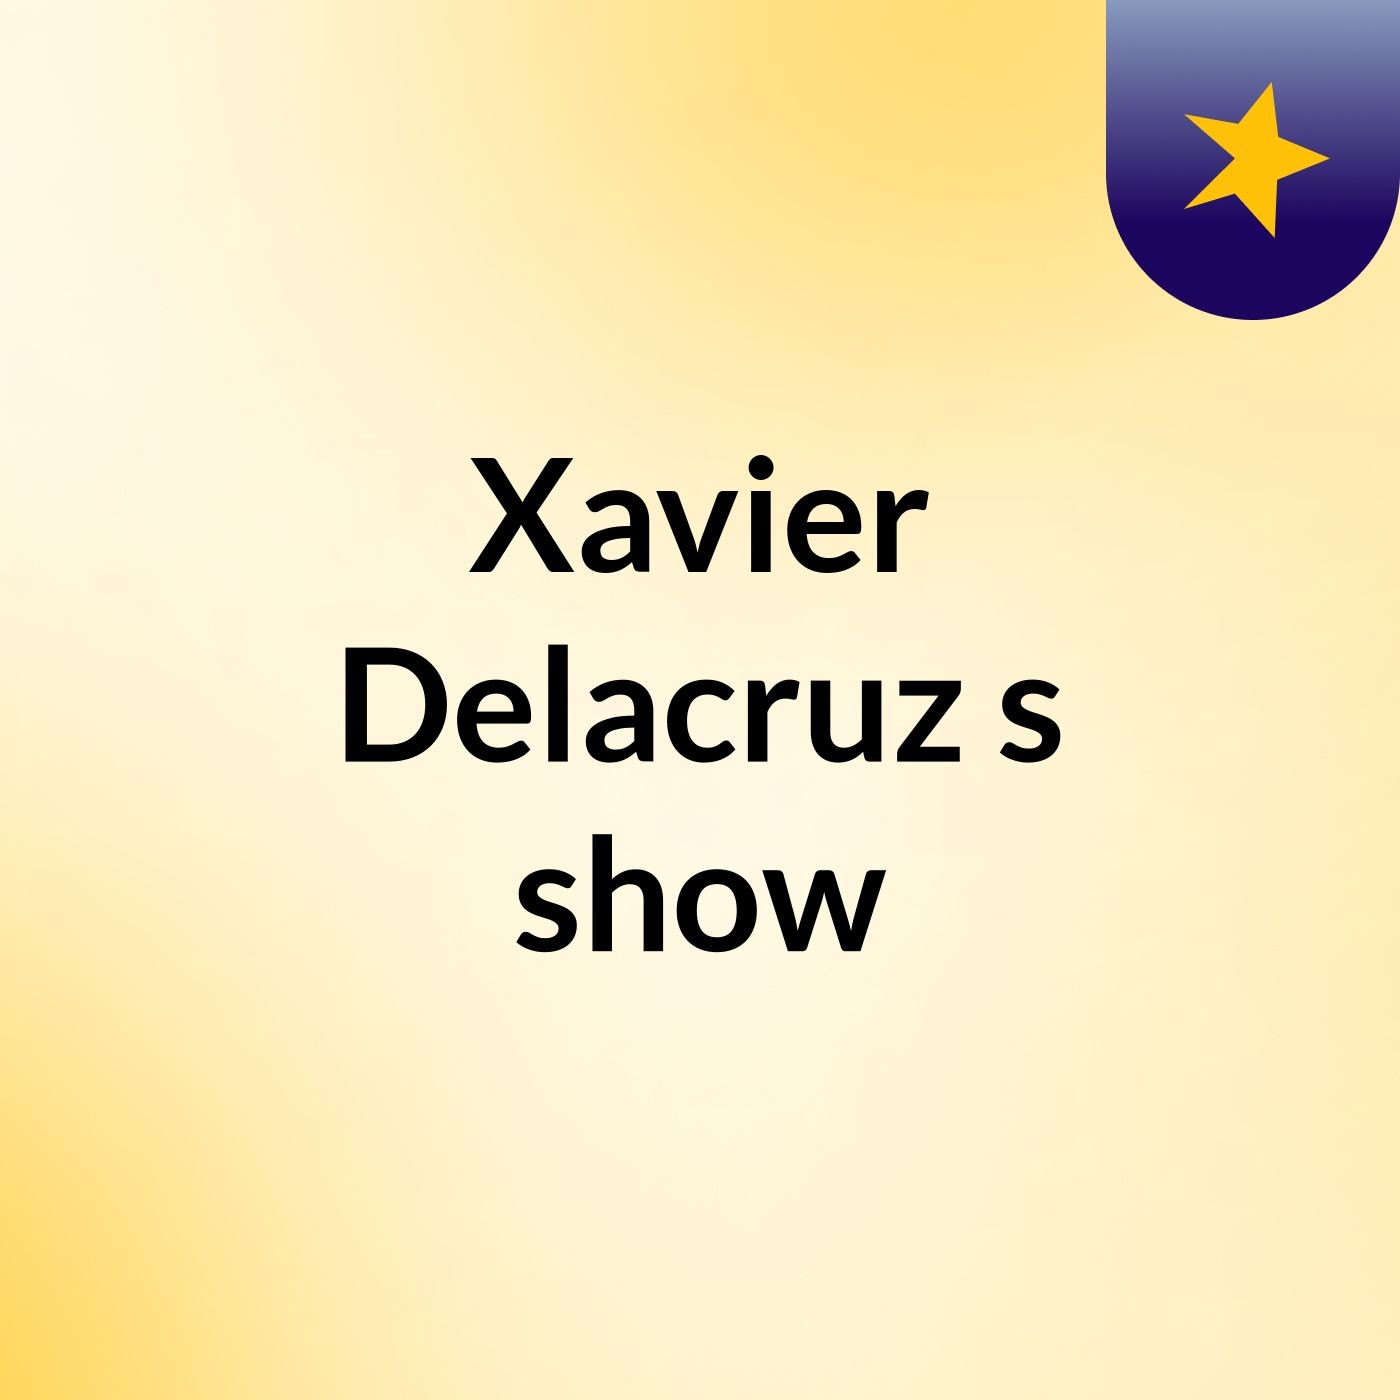 Episode 7 - Xavier Delacruz's show